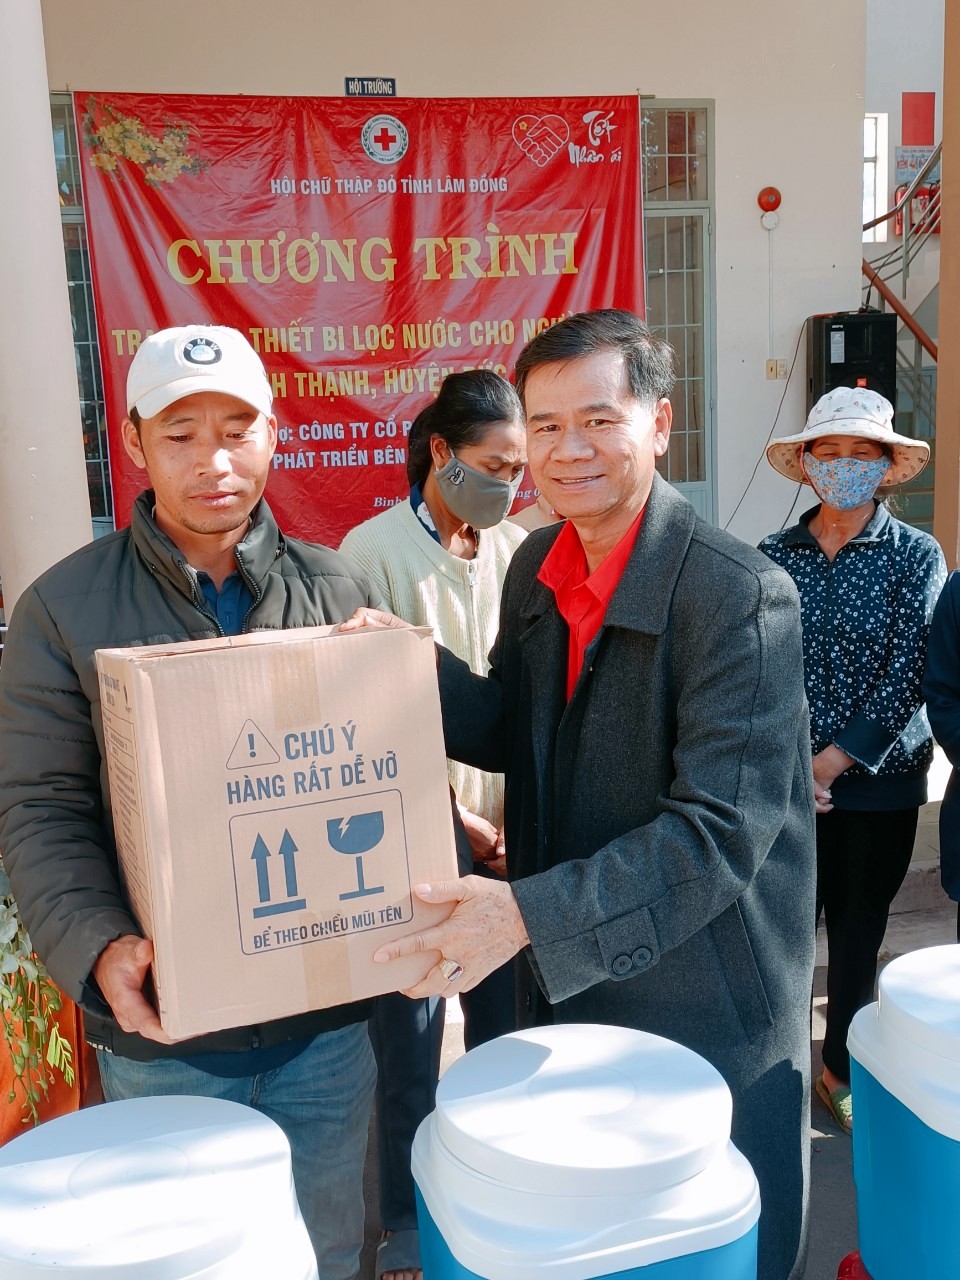 Ông Nguyễn Quang Minh –Chủ tịch Hội Chữ thập đỏ Lâm Đồng trao tặng thiết bị lọc nước cho người dân
	
